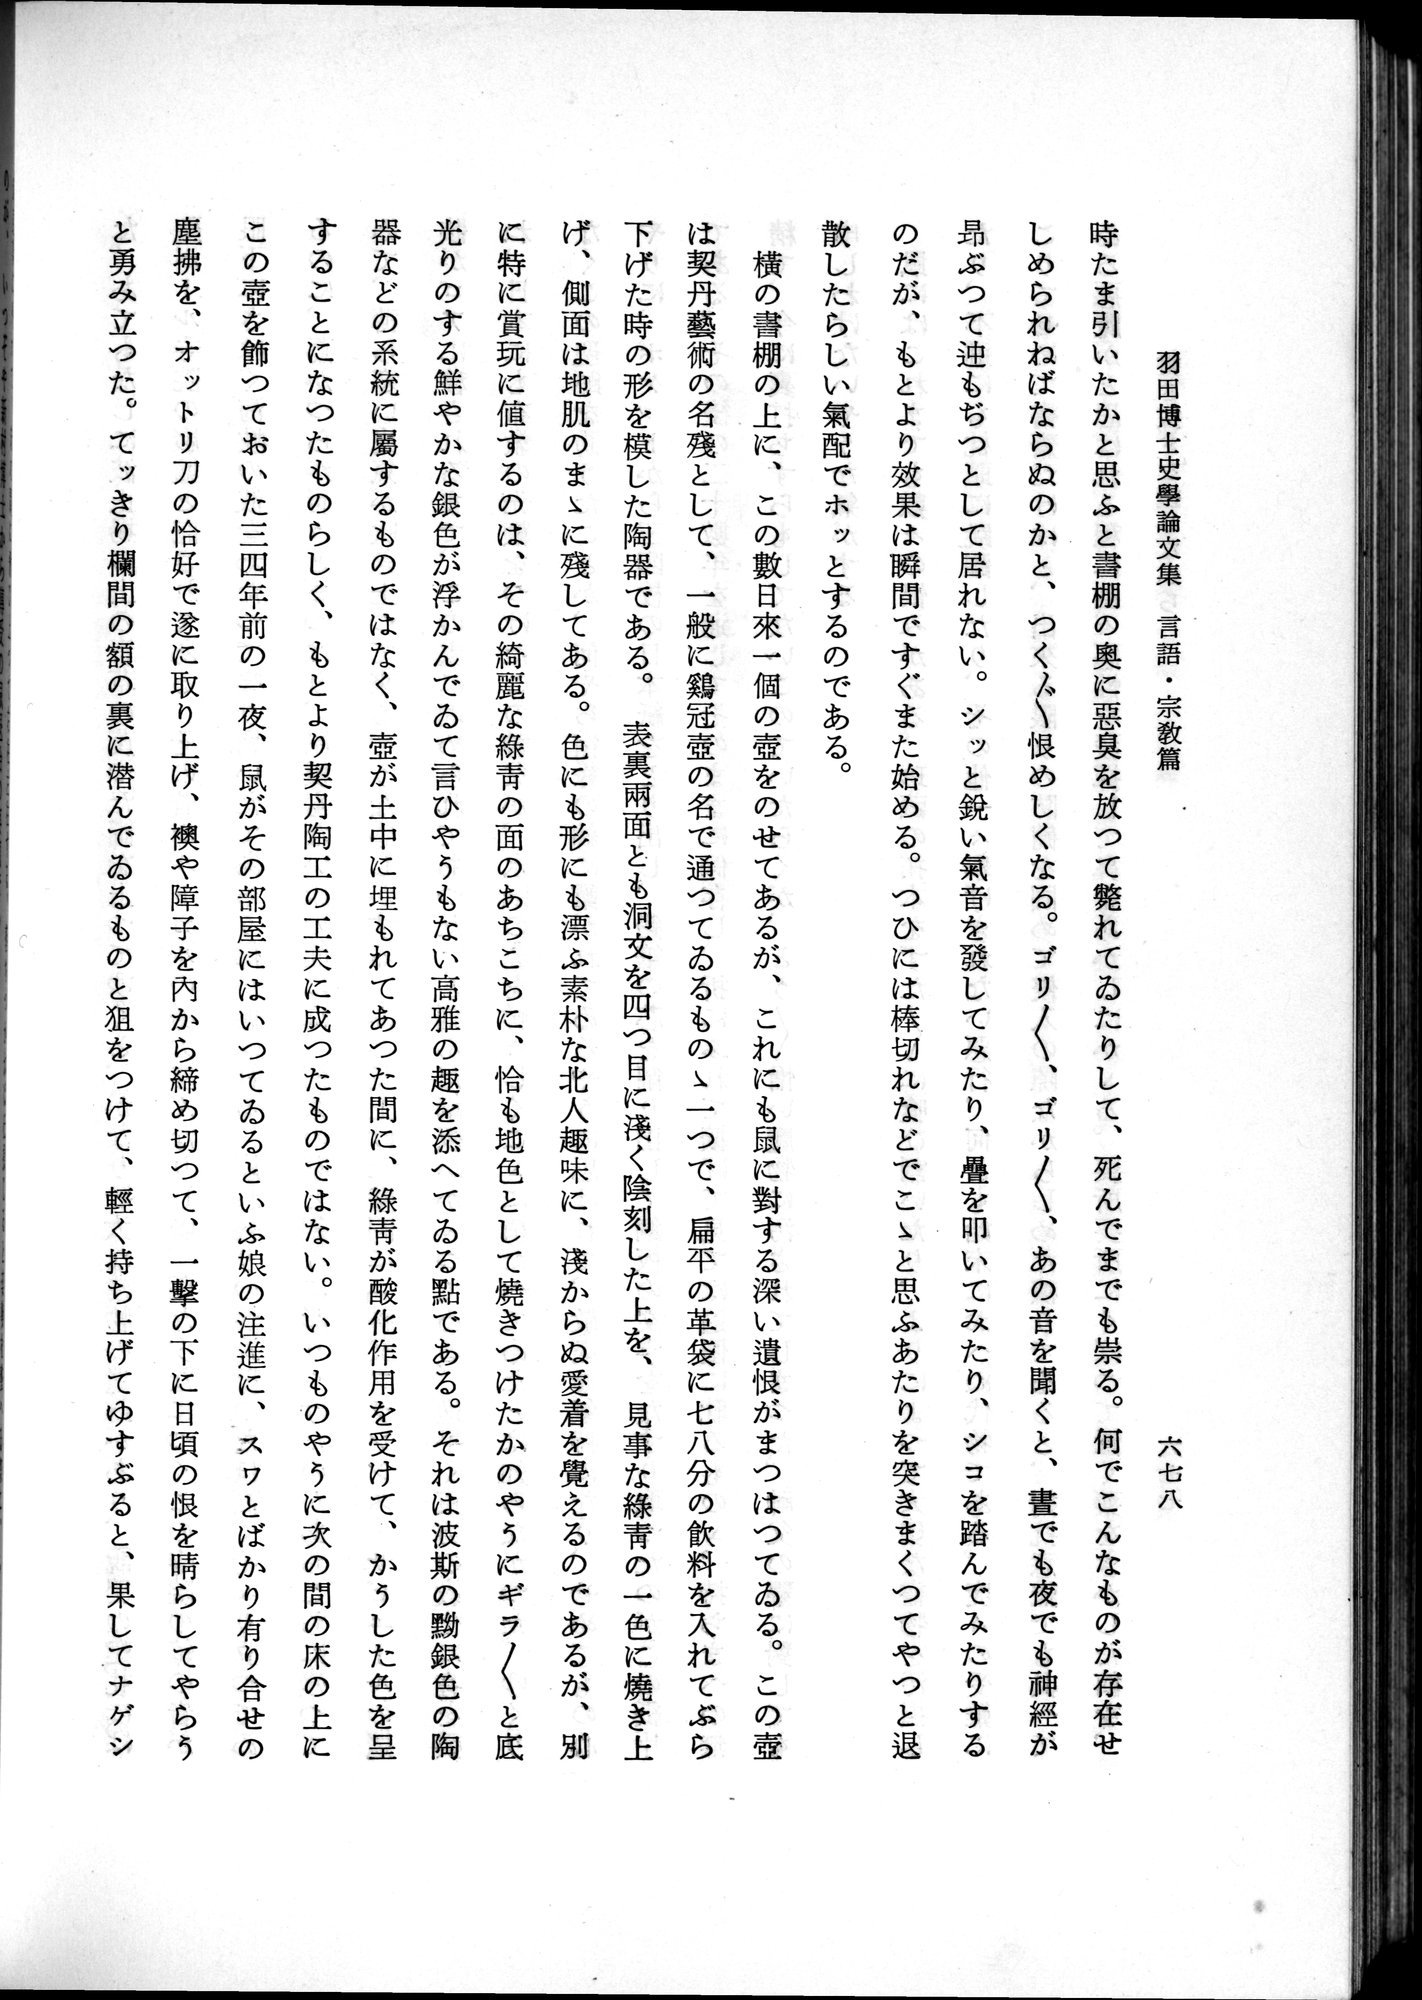 羽田博士史学論文集 : vol.2 / Page 742 (Grayscale High Resolution Image)